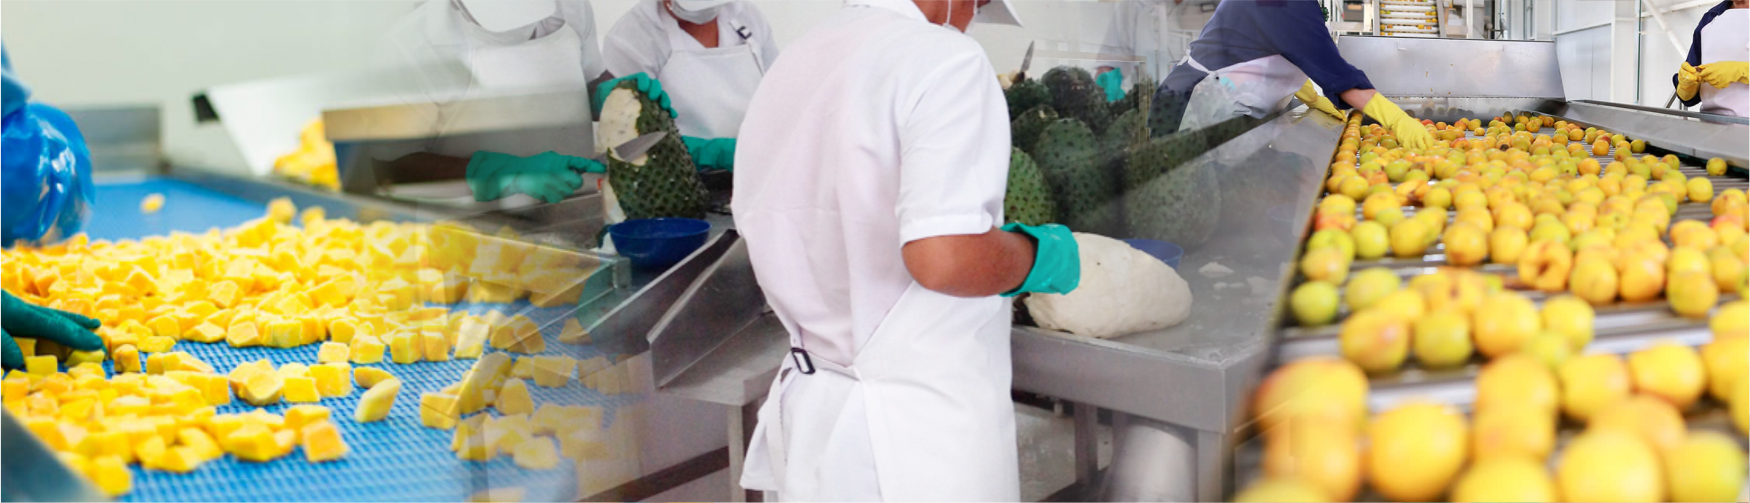 Costabell Desarrollo de productos alimenticios a base de fruta y sus derivados con estándares de calidad